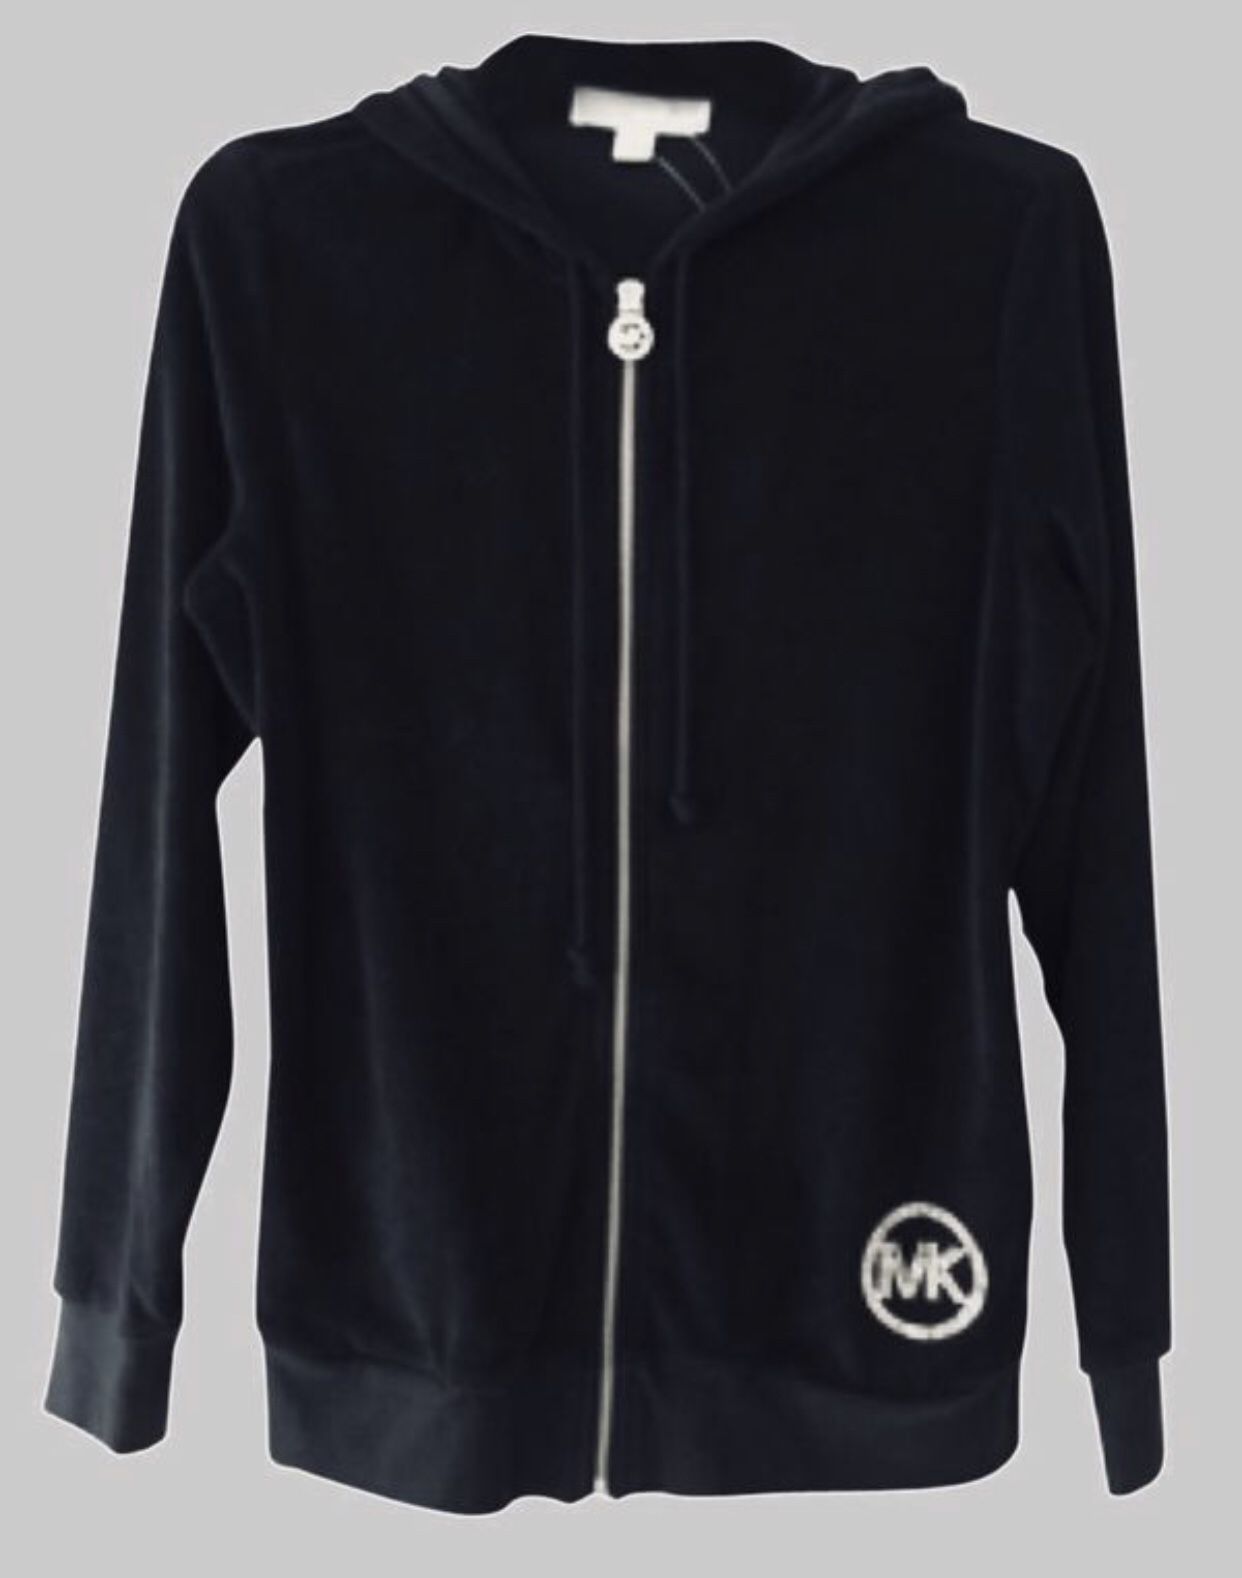 Michael Kors Hooded Sweatshirt Jacket